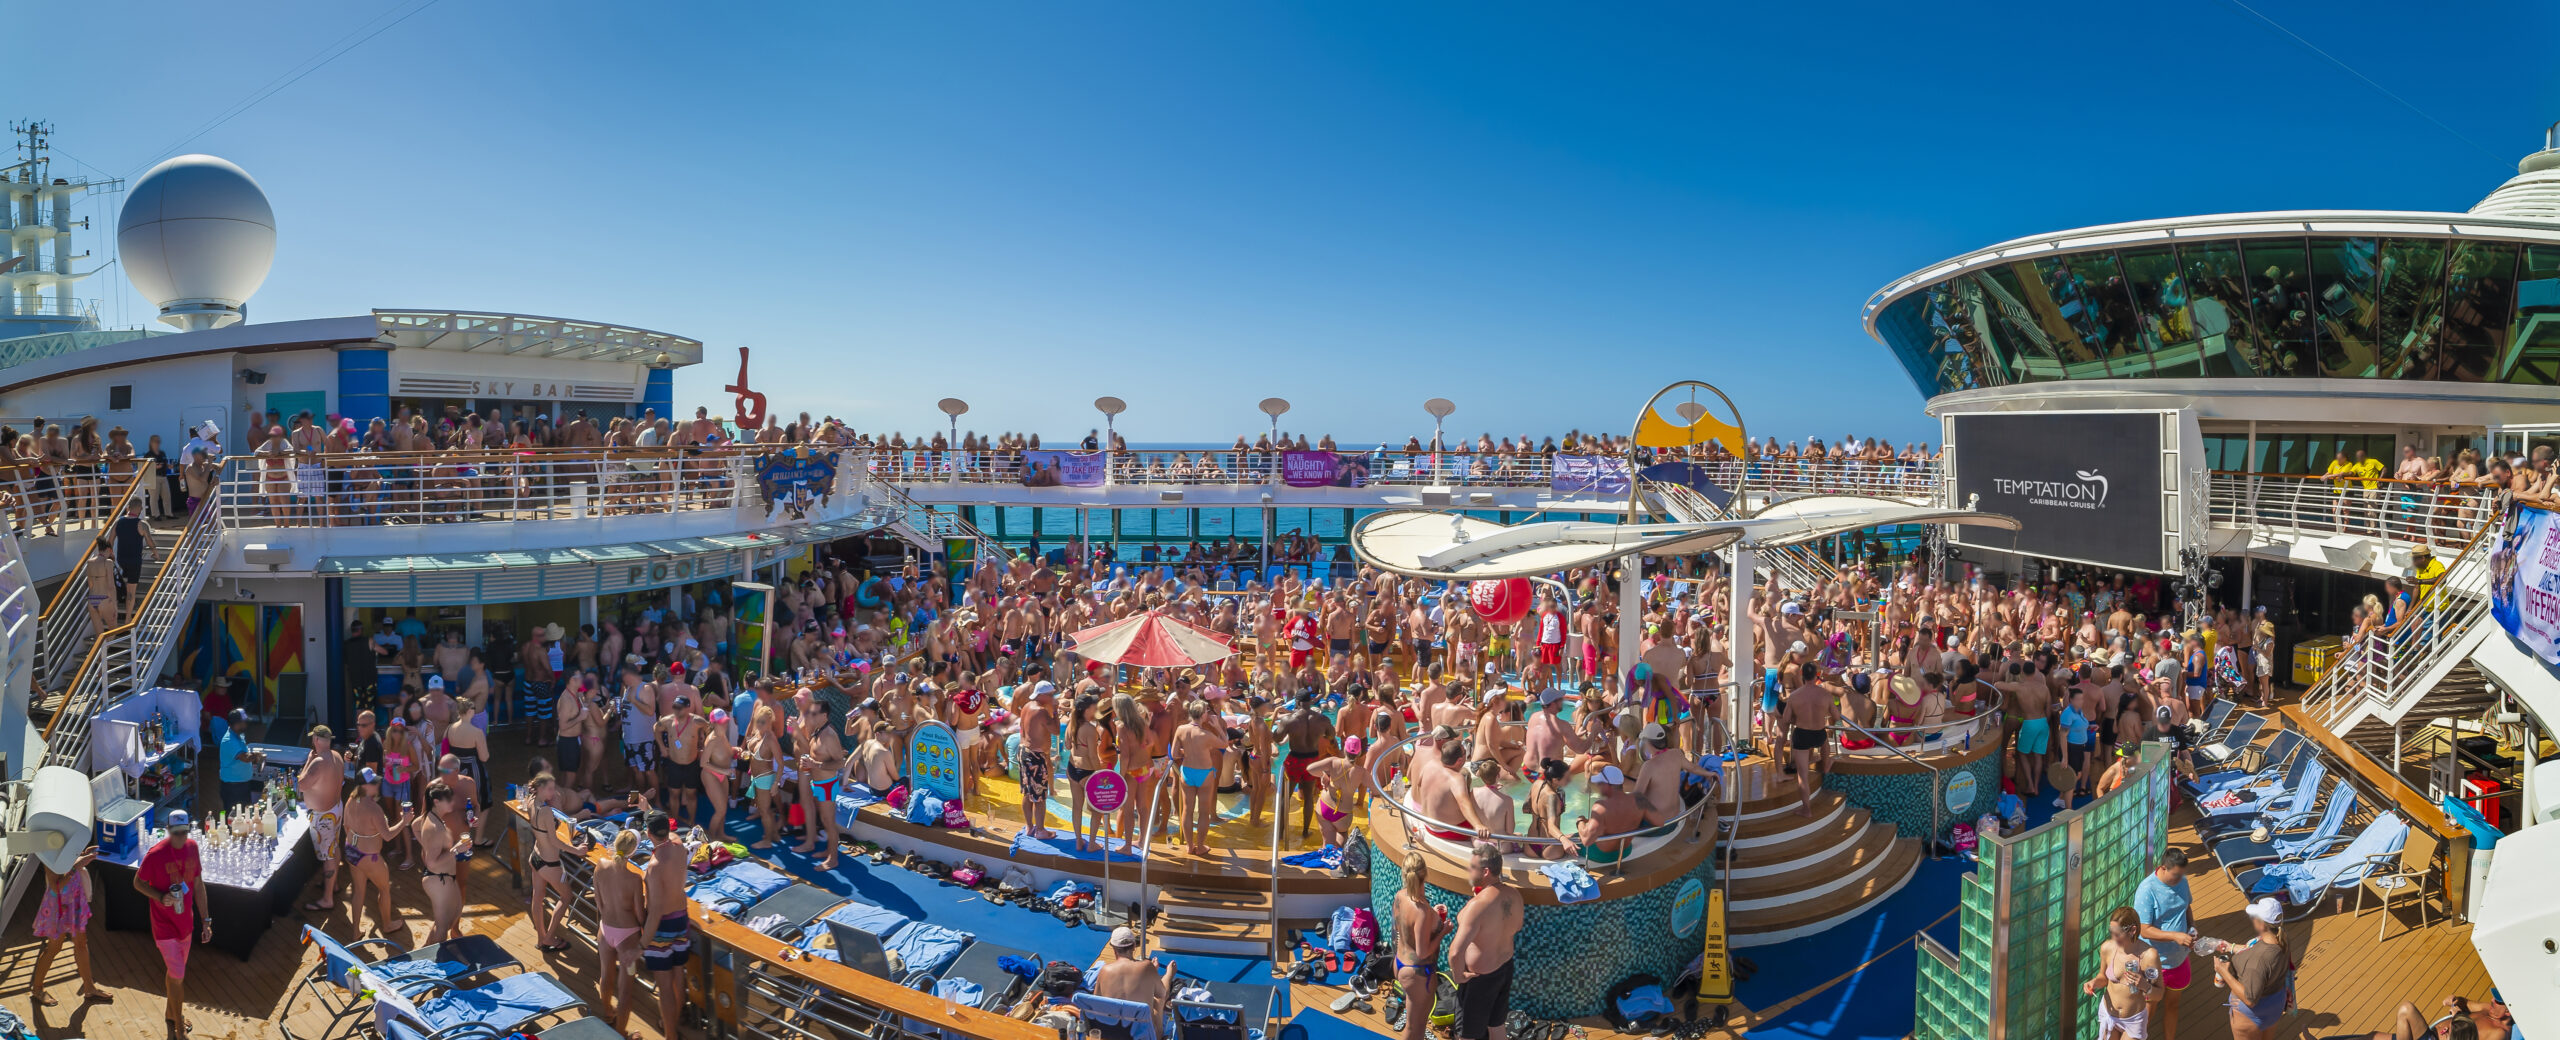 Crowd in swimwear in sun on board ship